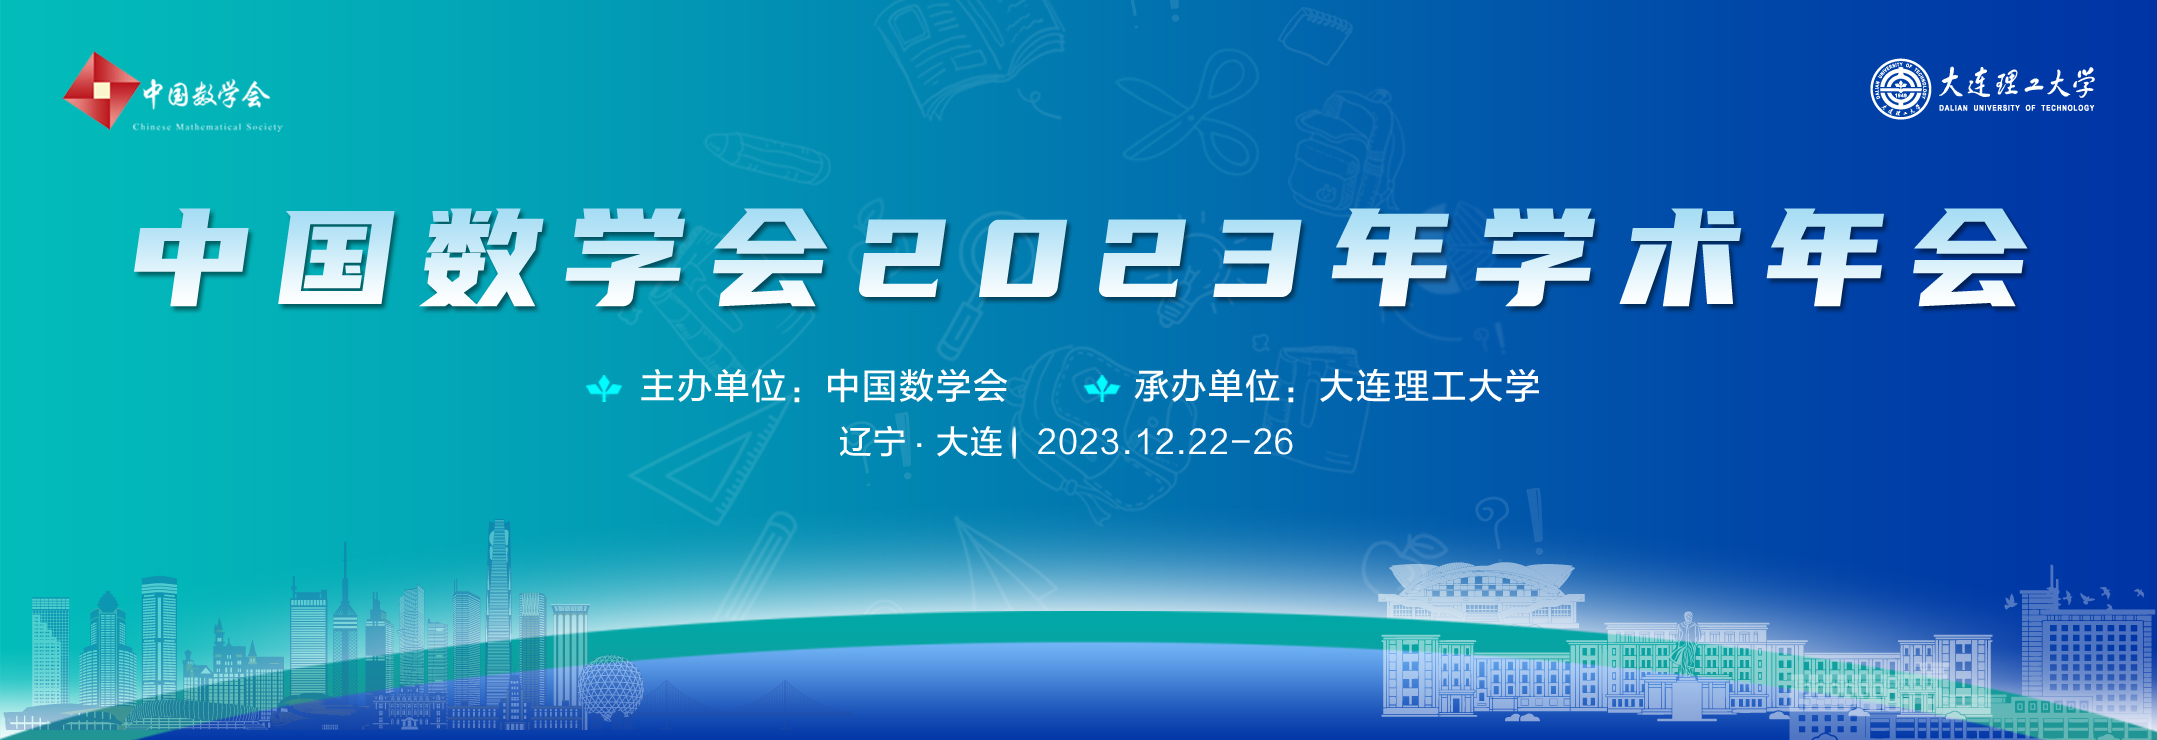 中国数学学会2023年年会